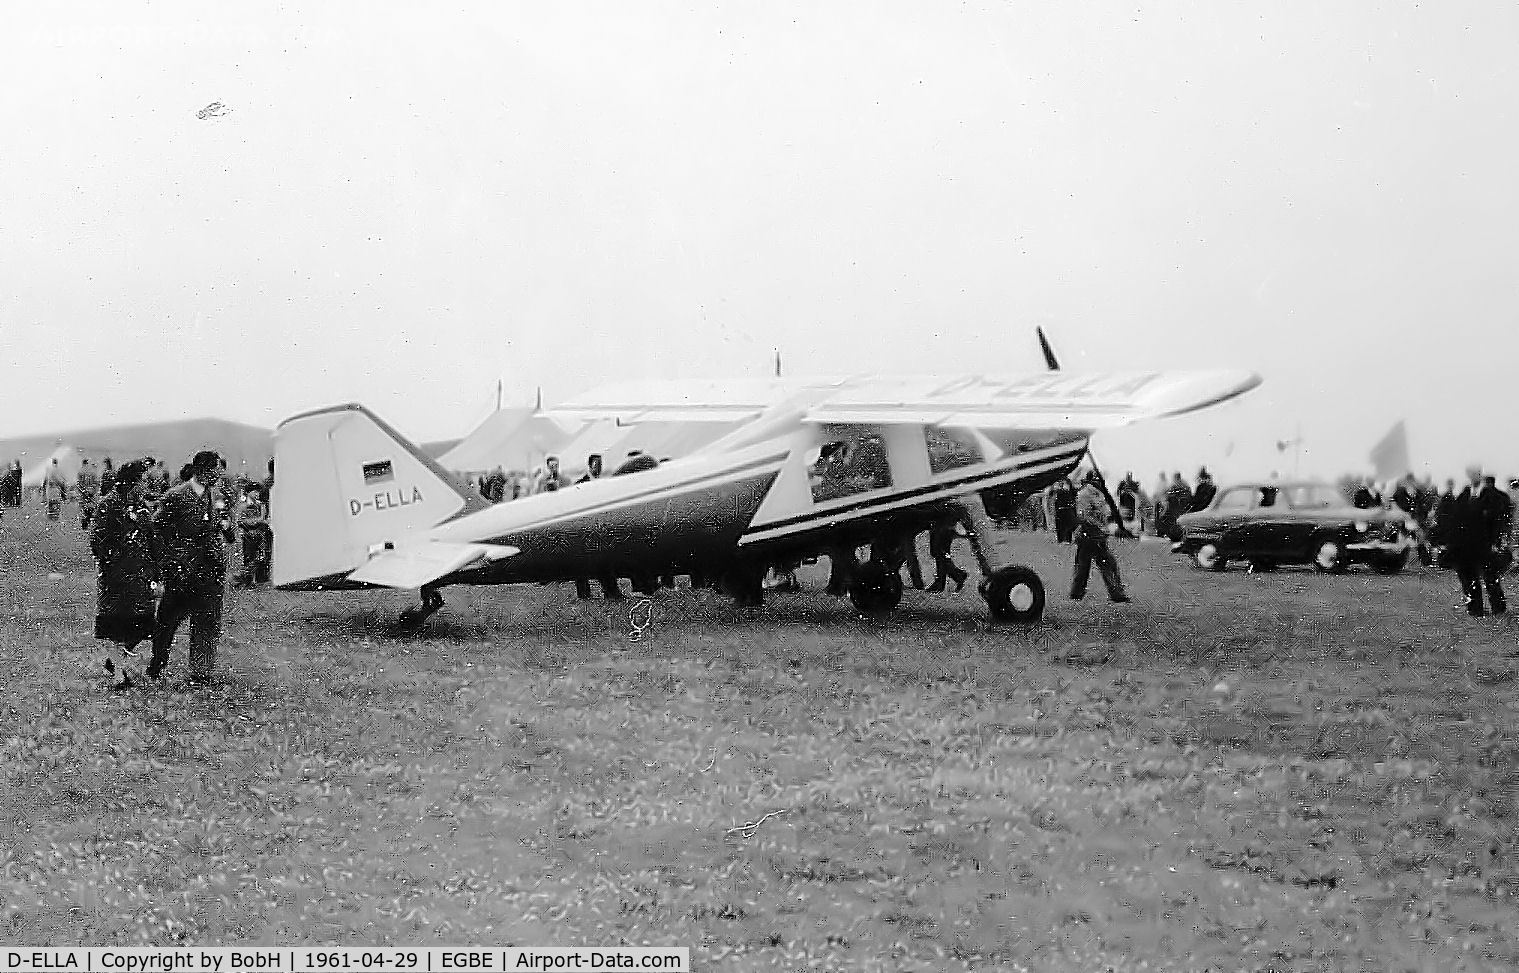 D-ELLA, Dornier Do-27Q-4 C/N 2069, D-ELLA at the Baginton Air Show in 1961.